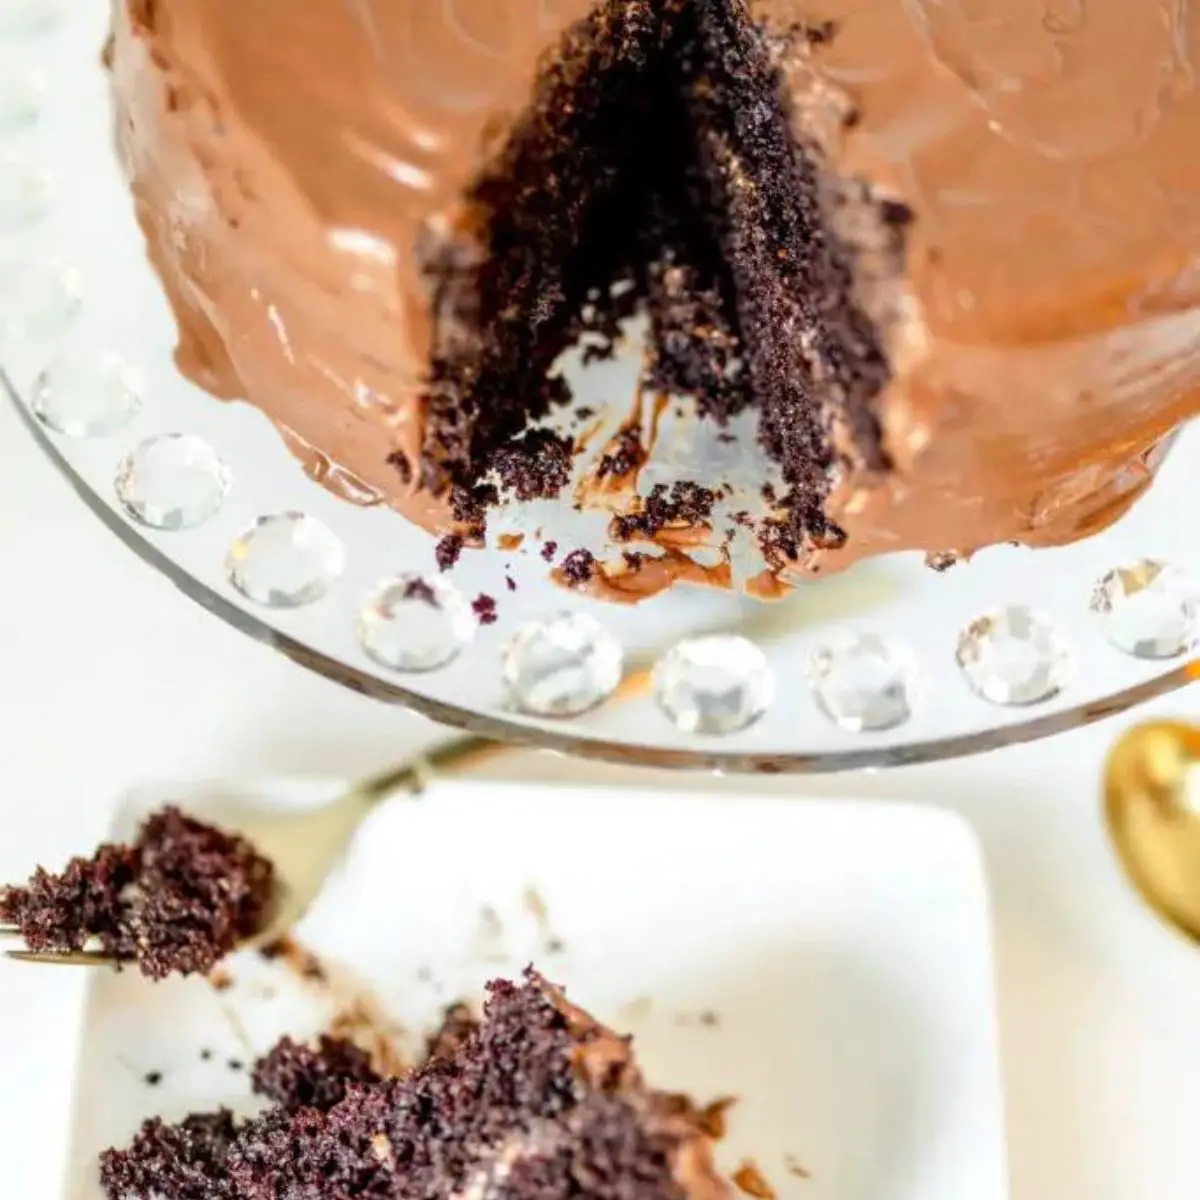 Hershey's Chocolate cake